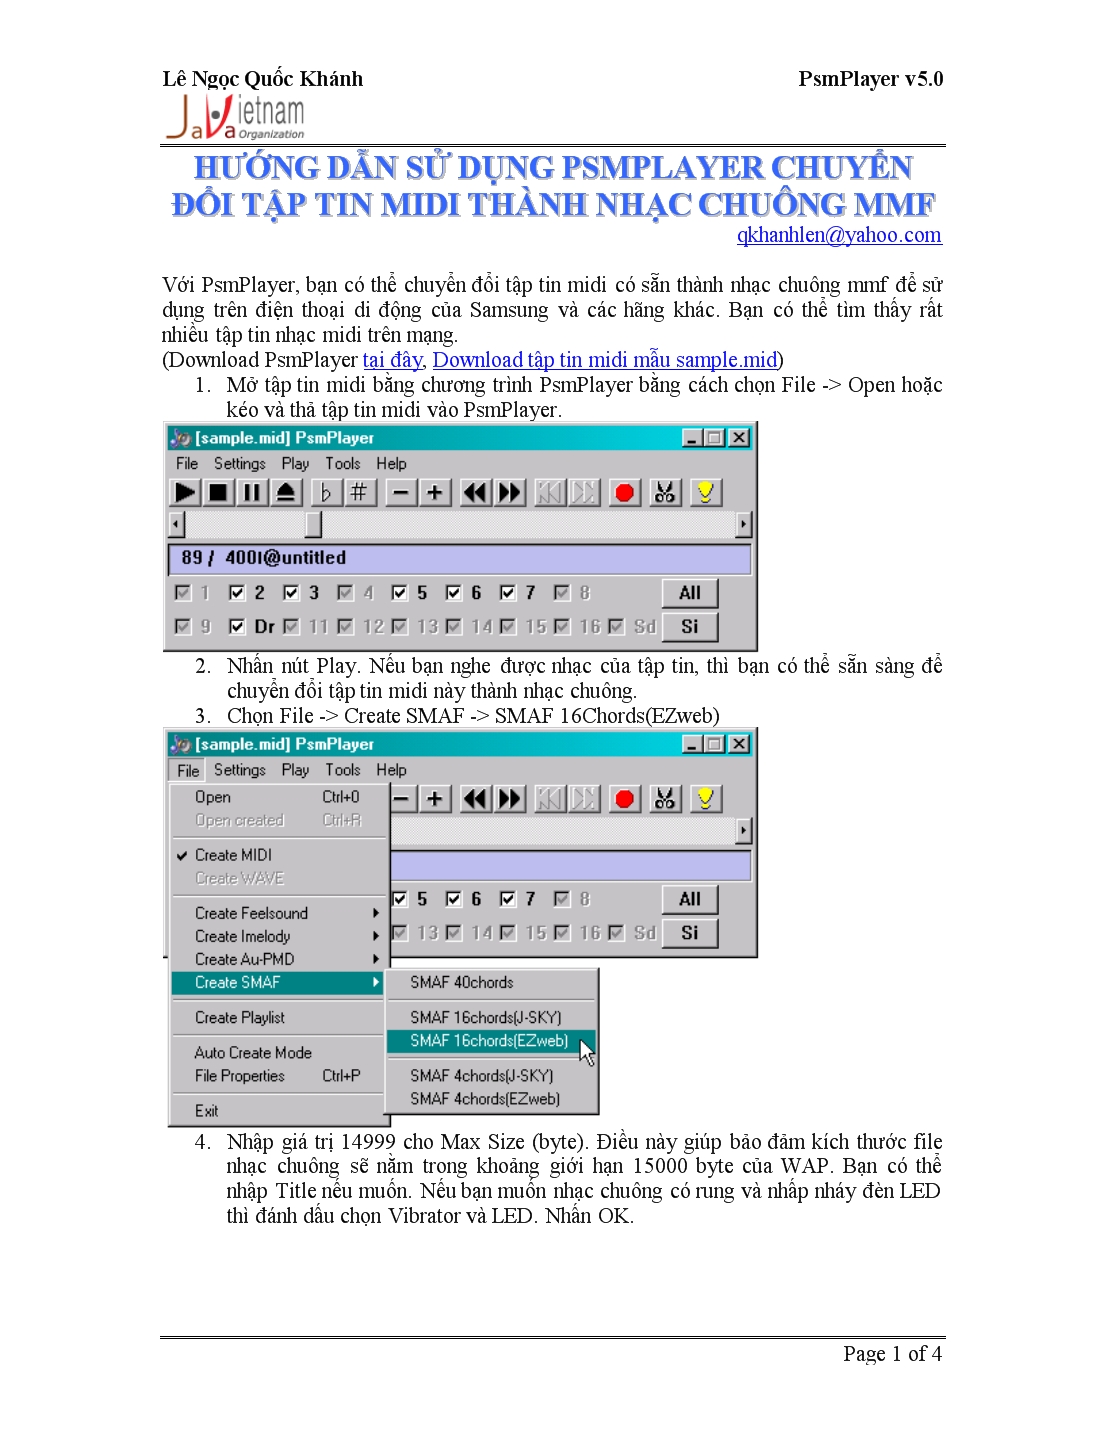 Hướng dẫn sử dụng PSMPlayer chuyển đổi tập tin MIDI thành nhạc chuông MMF trang 1